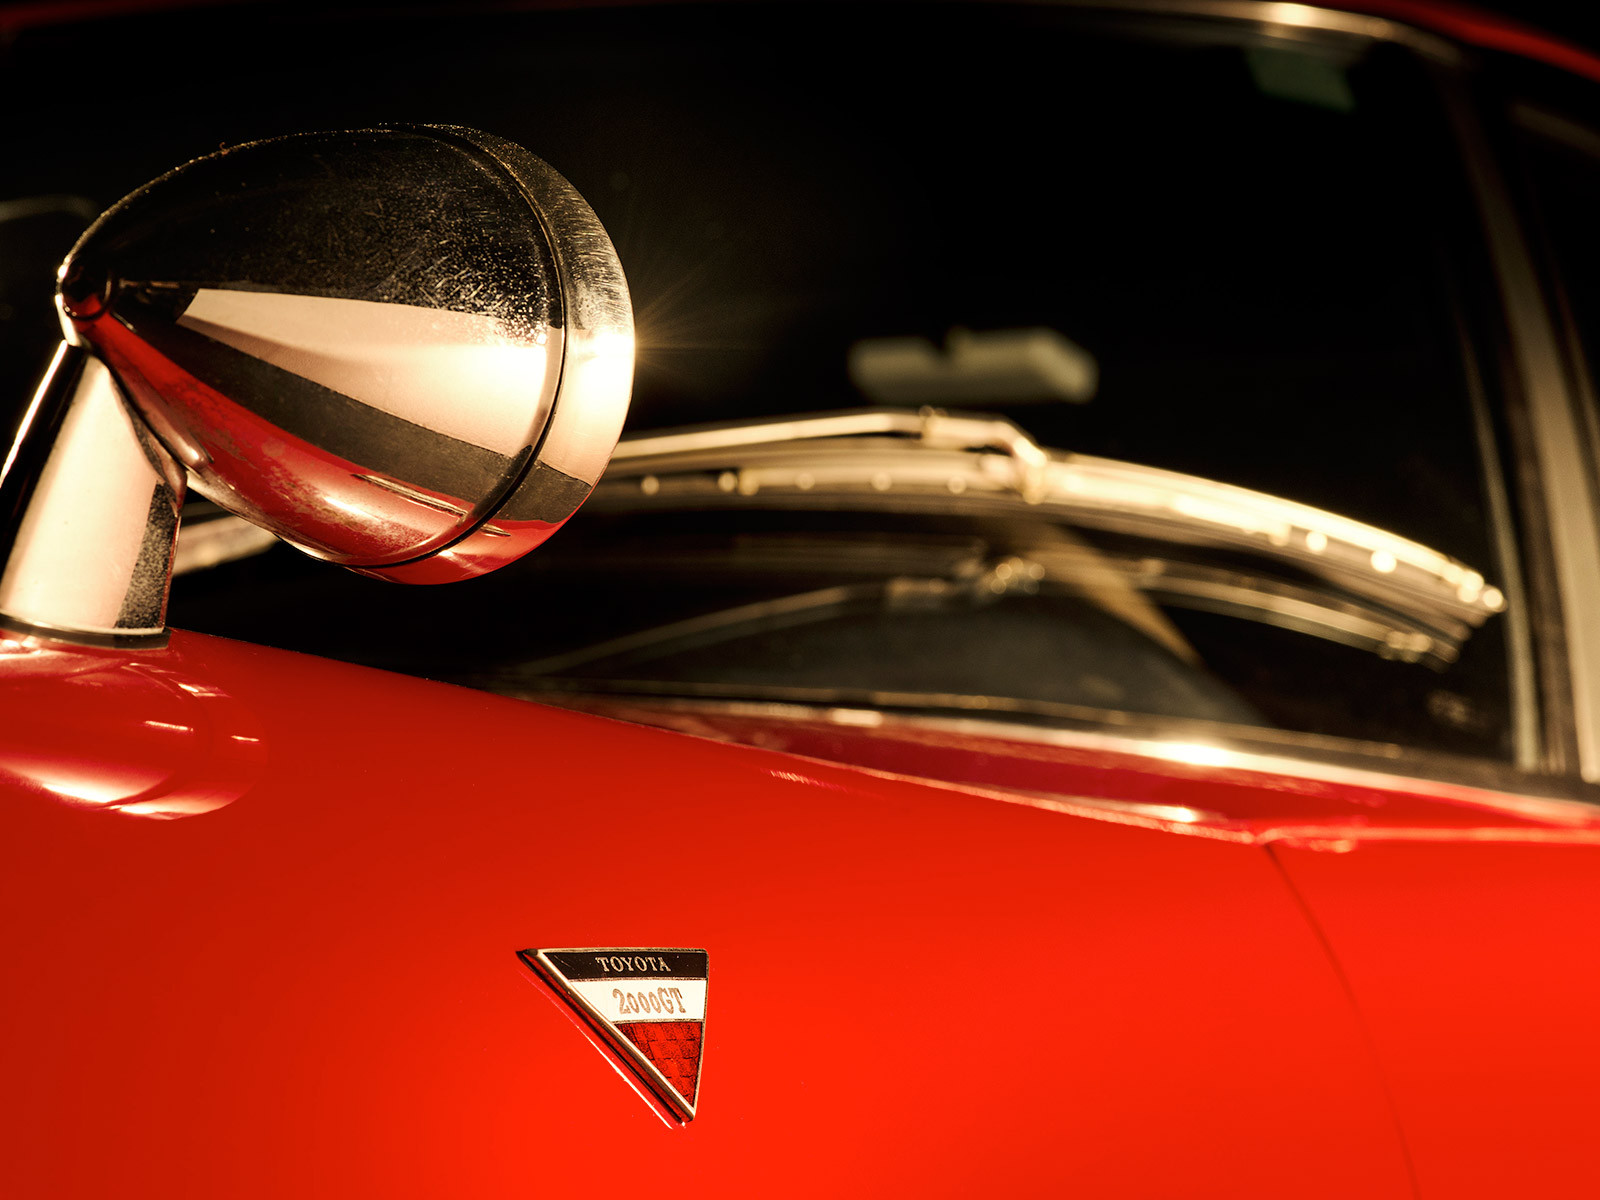 Toyota 2000GT, rood, exterieur, logo, zijkant, detailbeeld